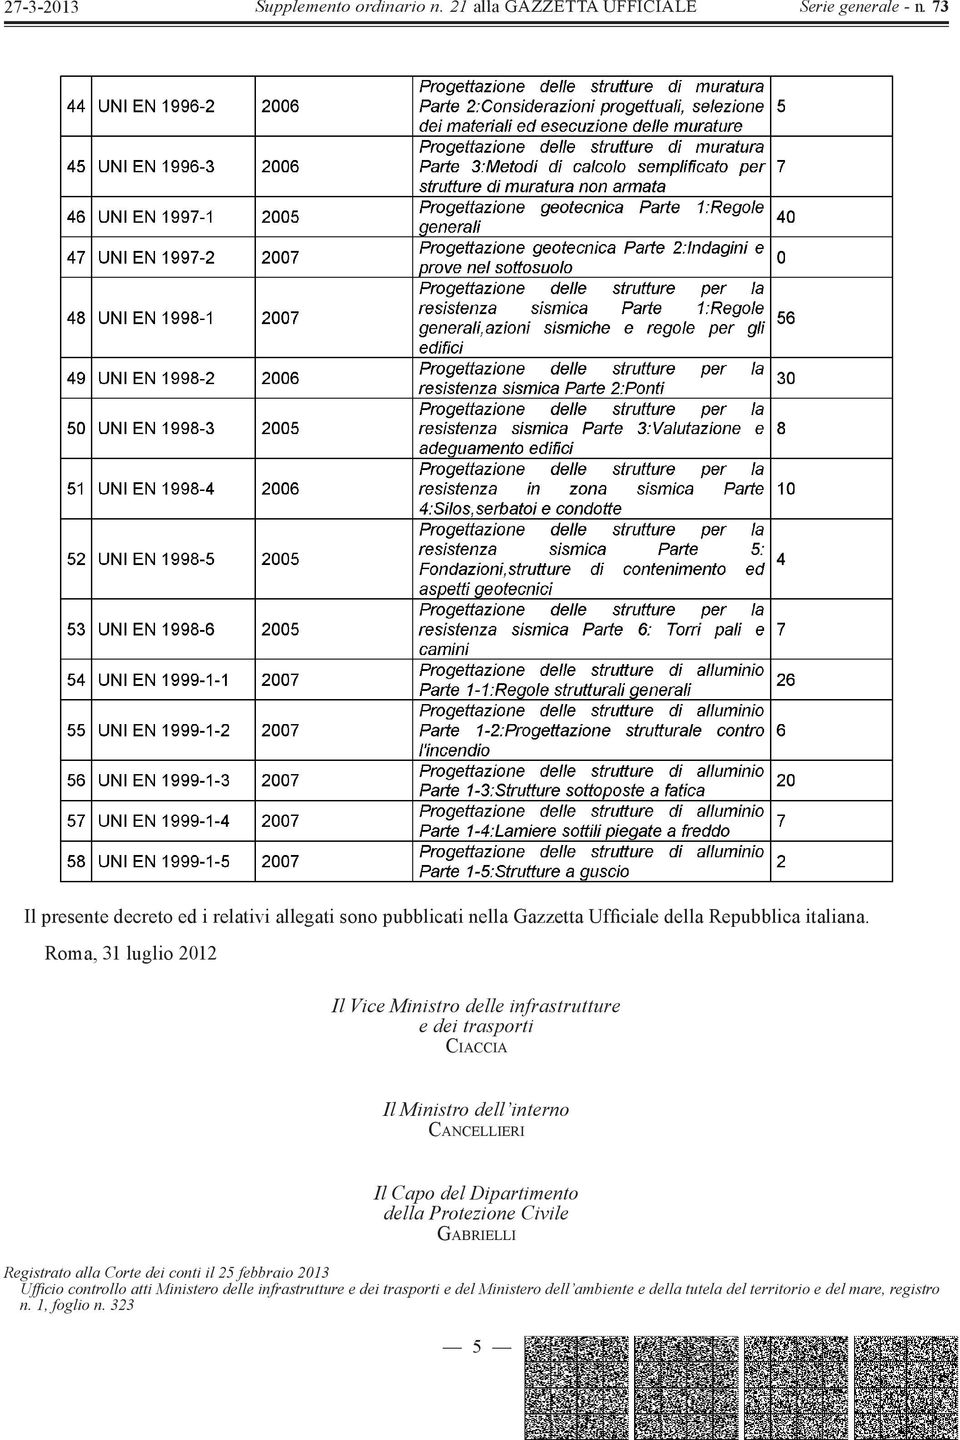 del Dipartimento della Protezione Civile GABRIELLI Registrato alla Corte dei conti il 25 febbraio 2013 Uffi cio controllo atti